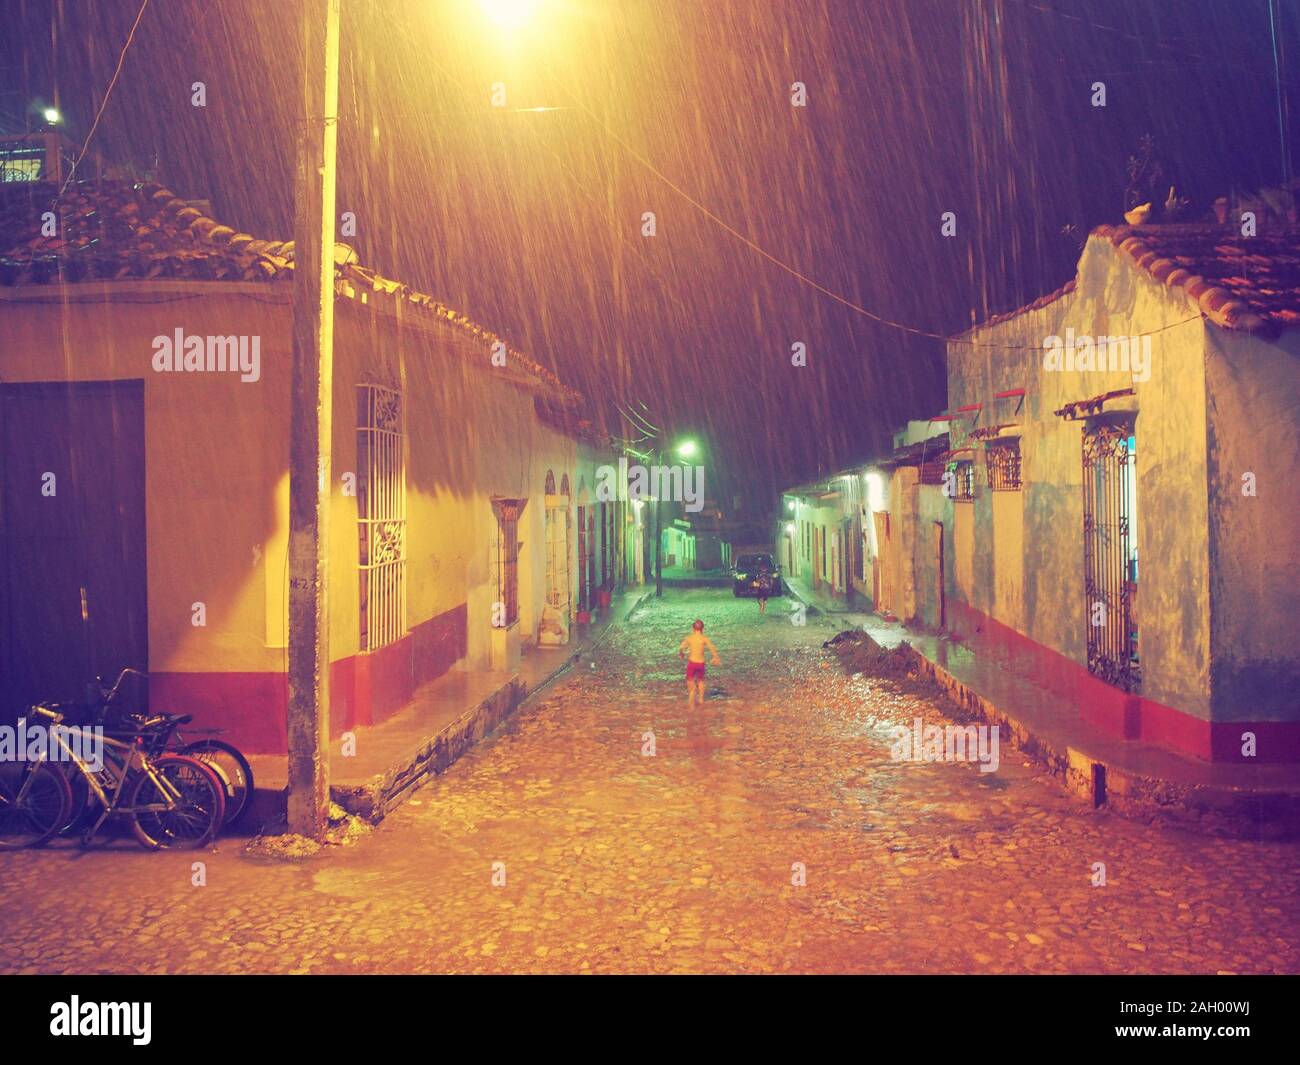 Jouer dans les rues lors de fortes pluies Banque D'Images